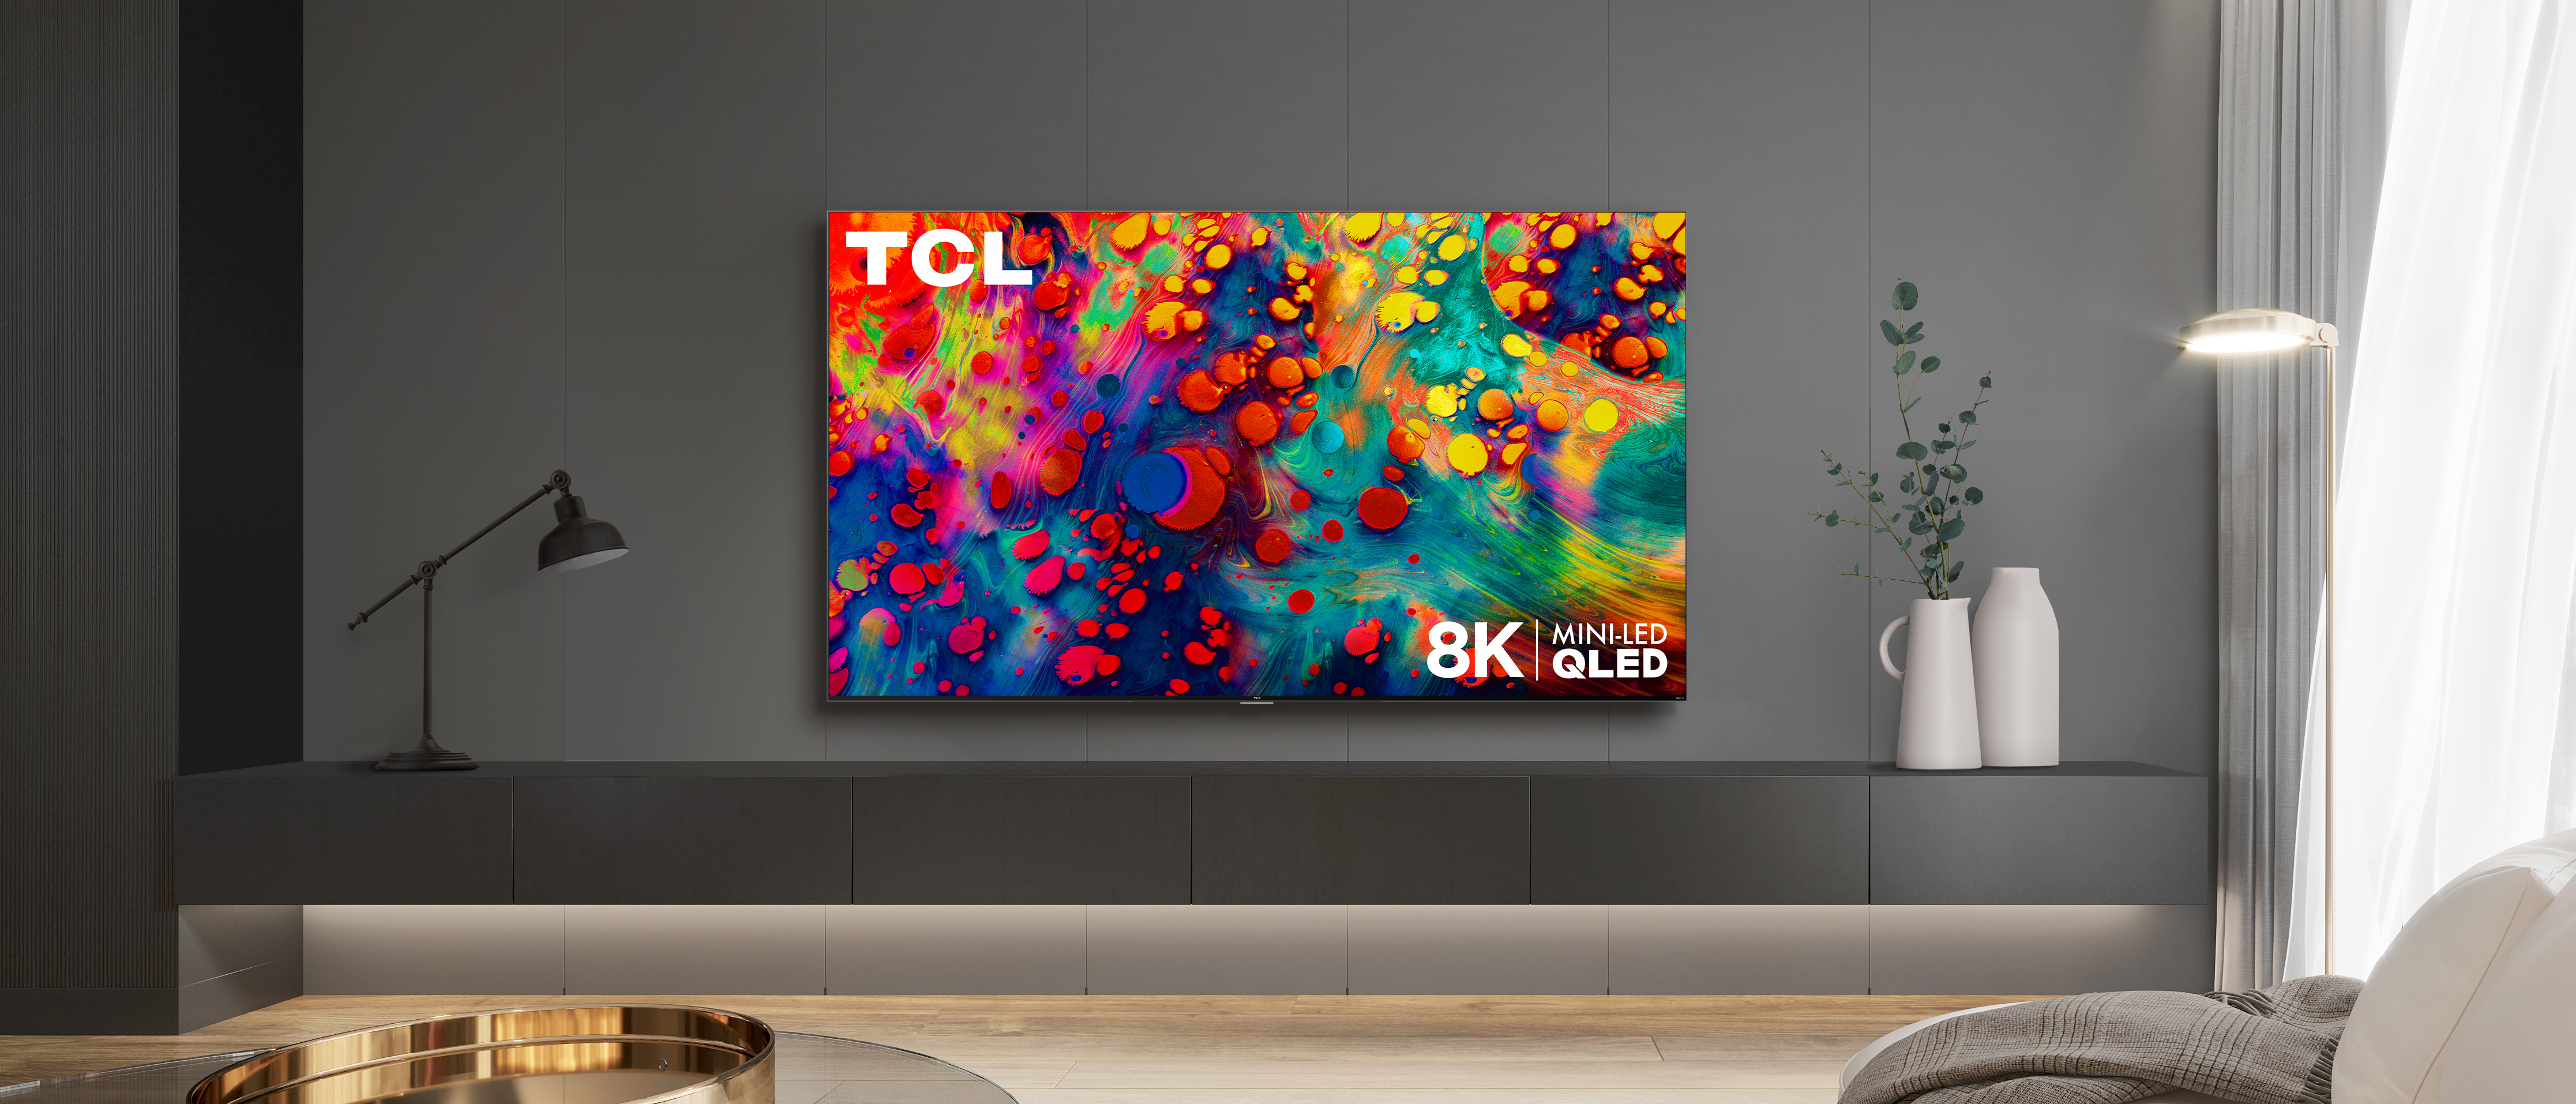 TCL Mini-led TV. TCL QLED. Телевизор ТСЛ мини лед.